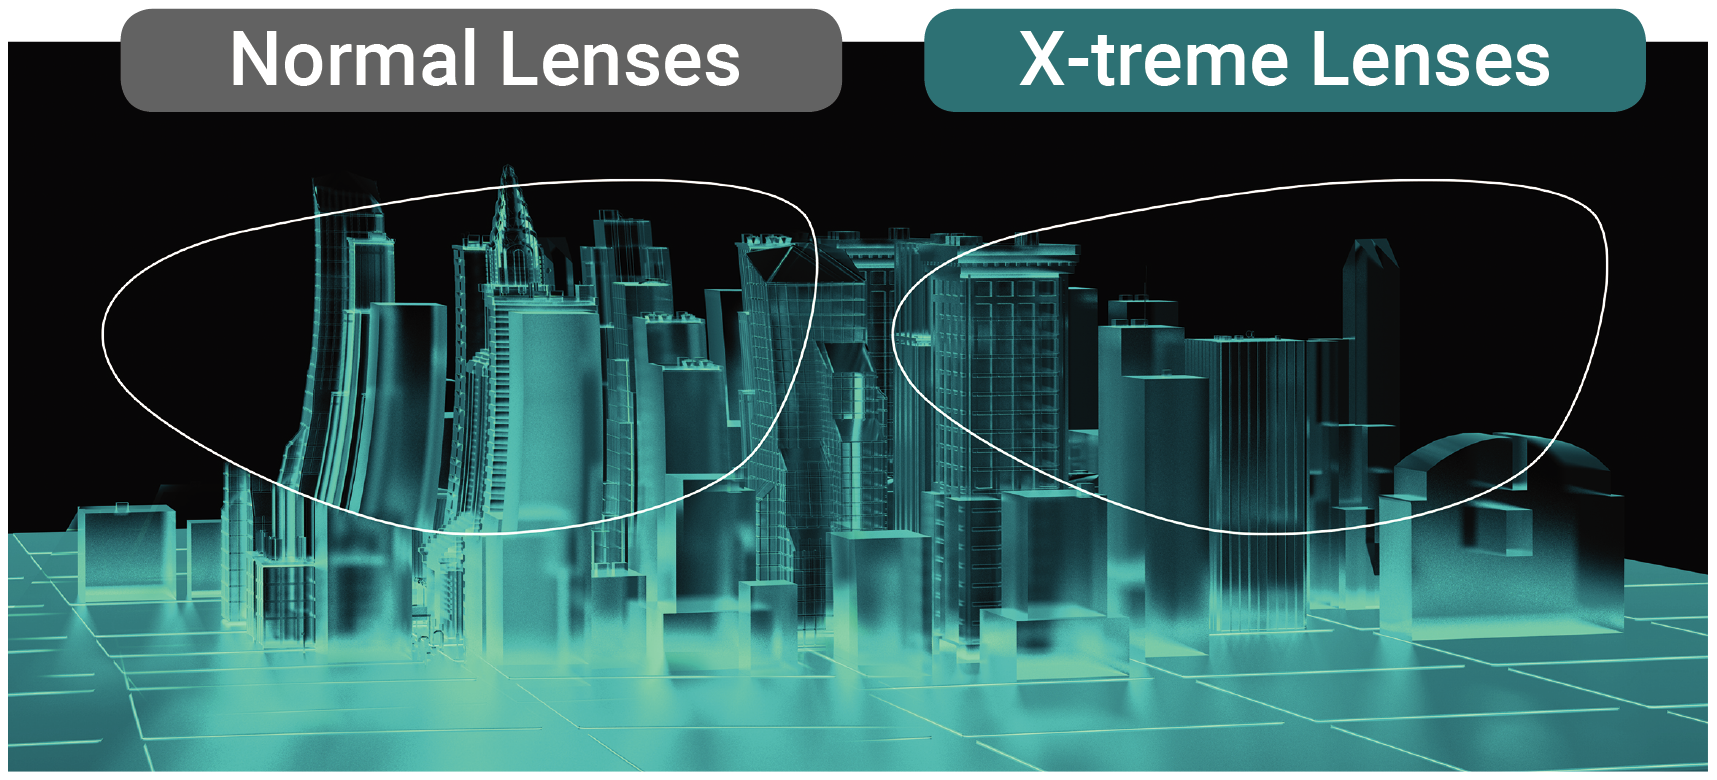 xtreme lenses comparison